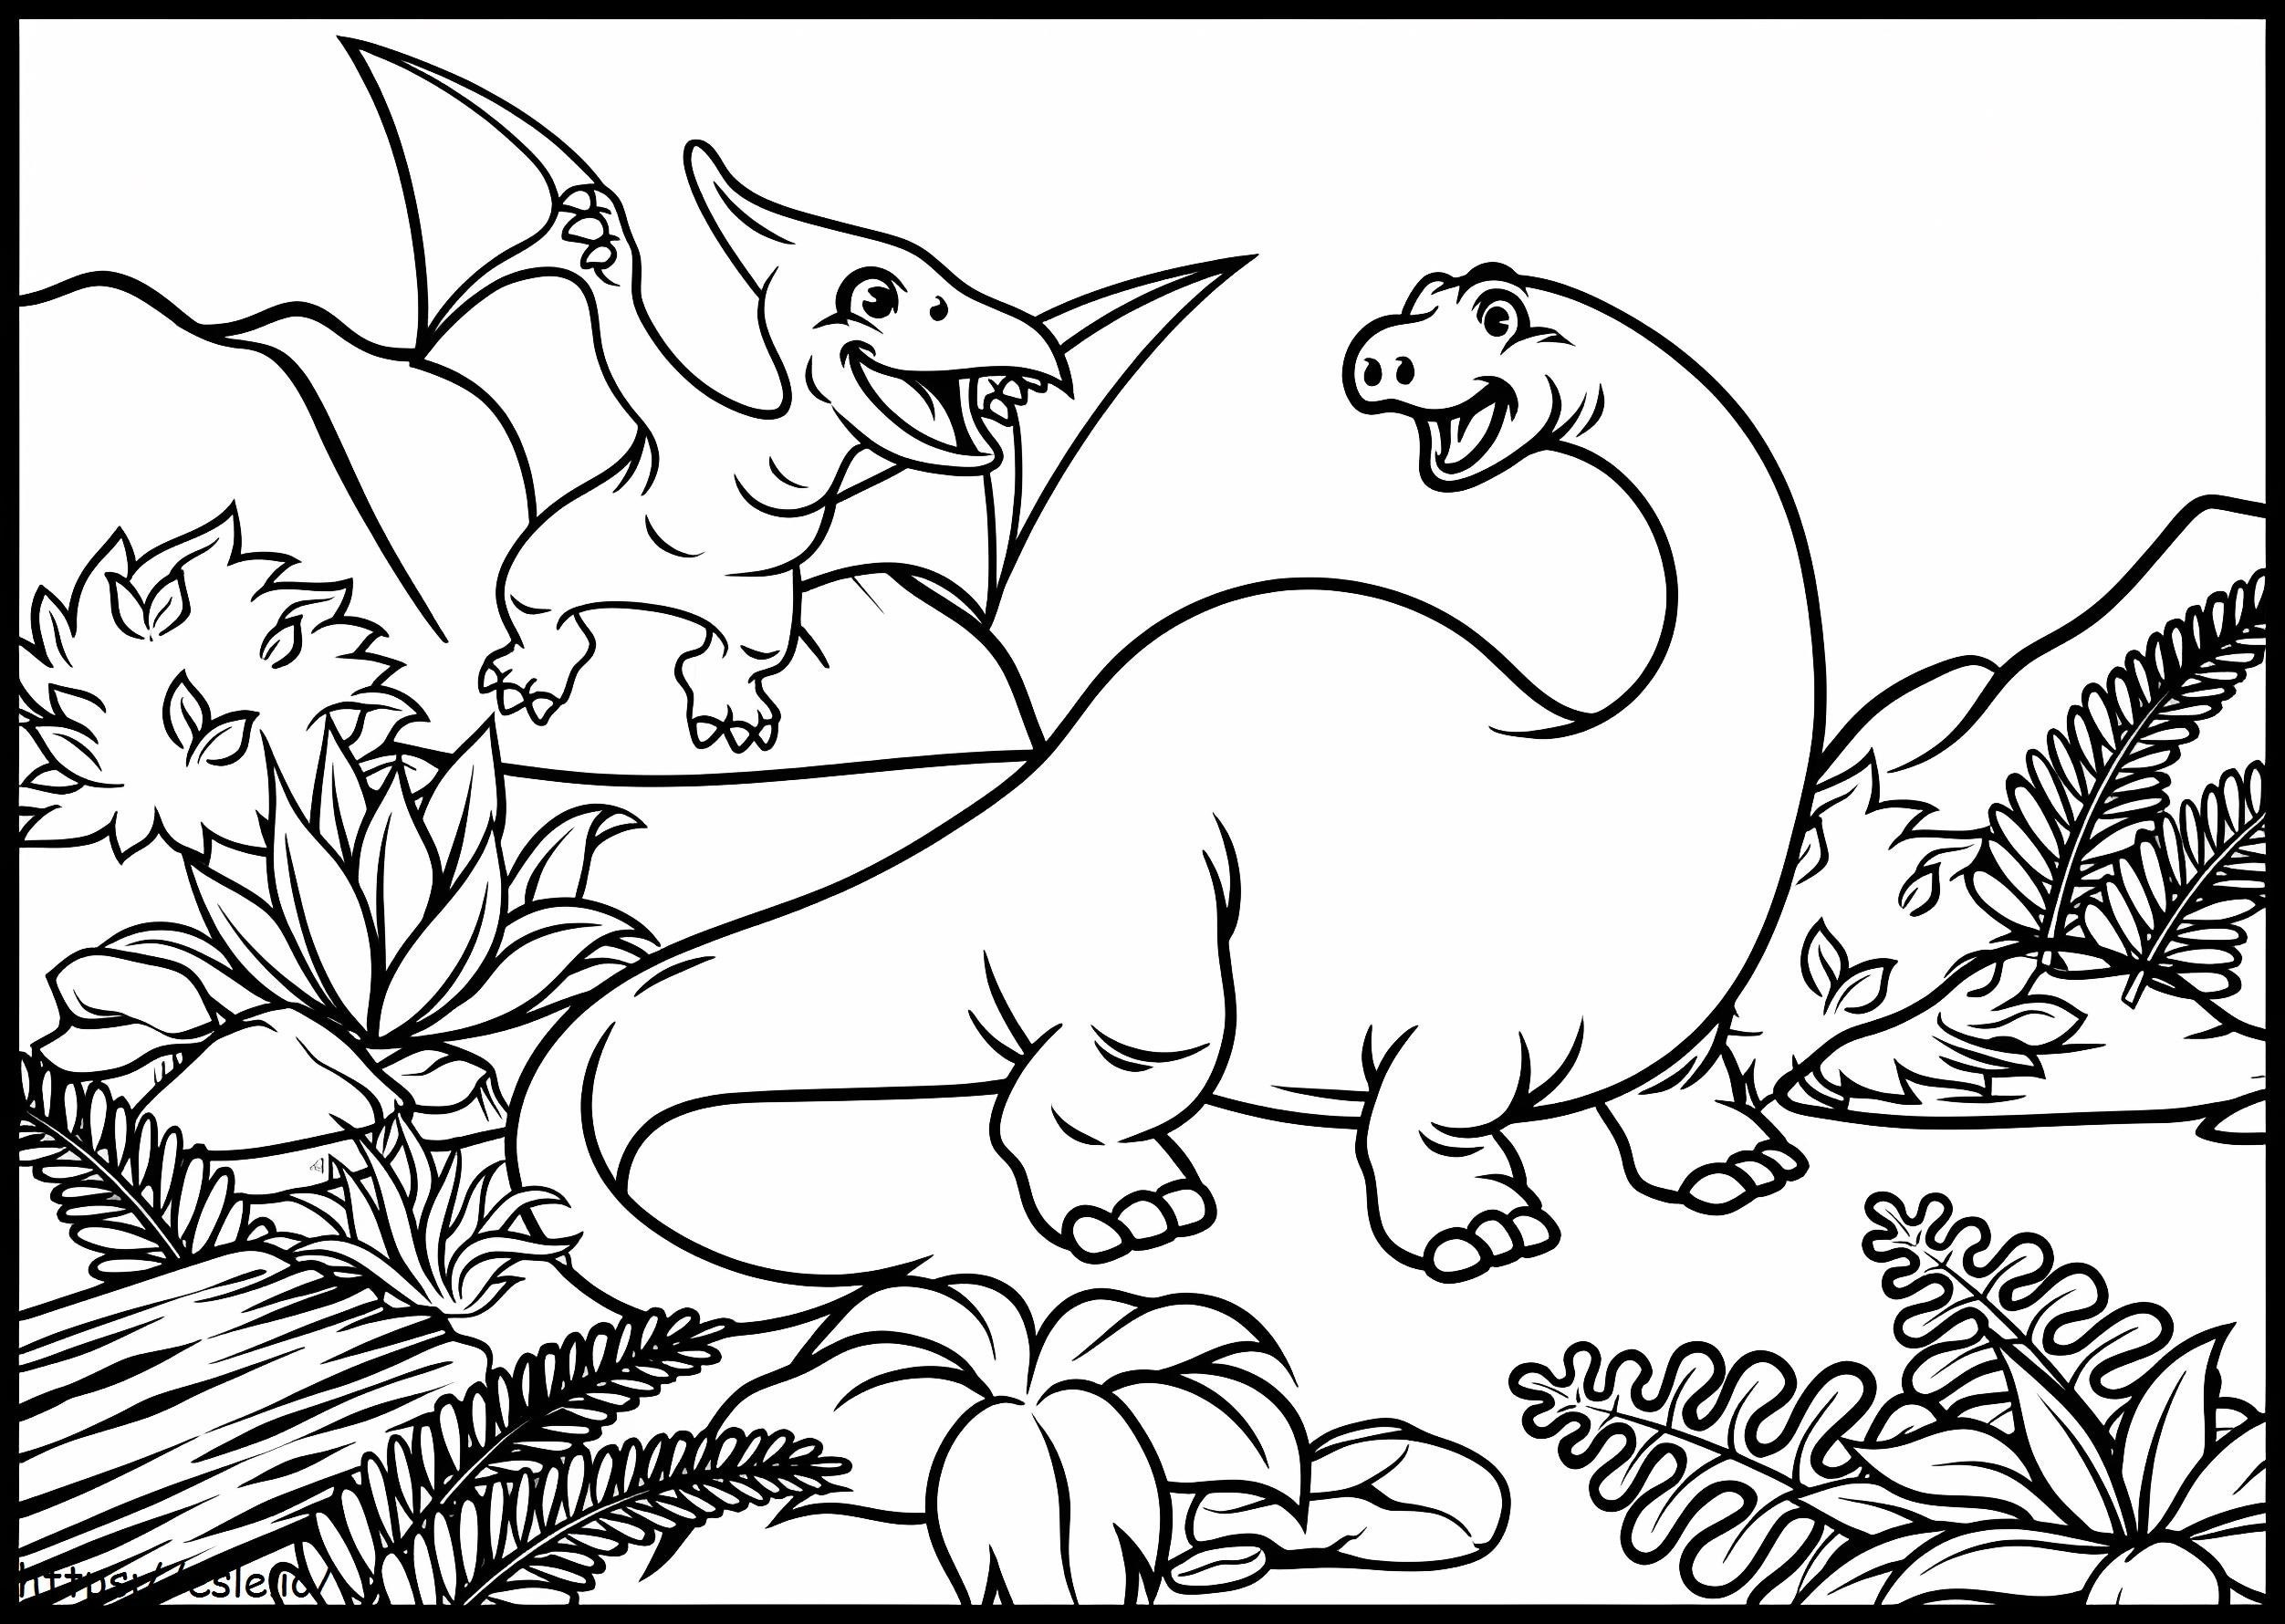 Brontozaur și liliacul de colorat